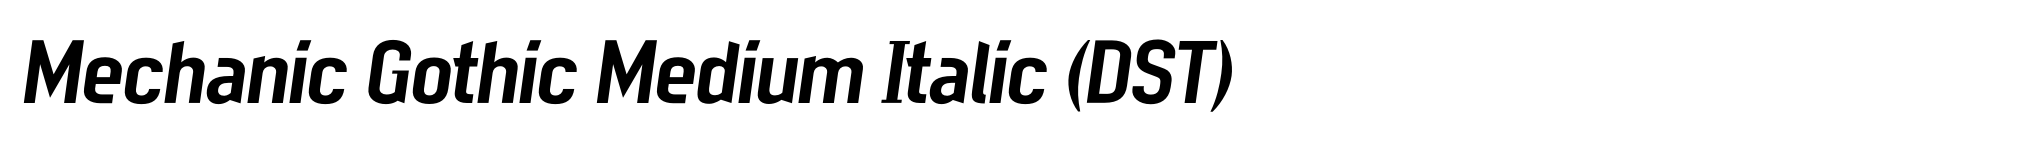 Mechanic Gothic Medium Italic (DST) image